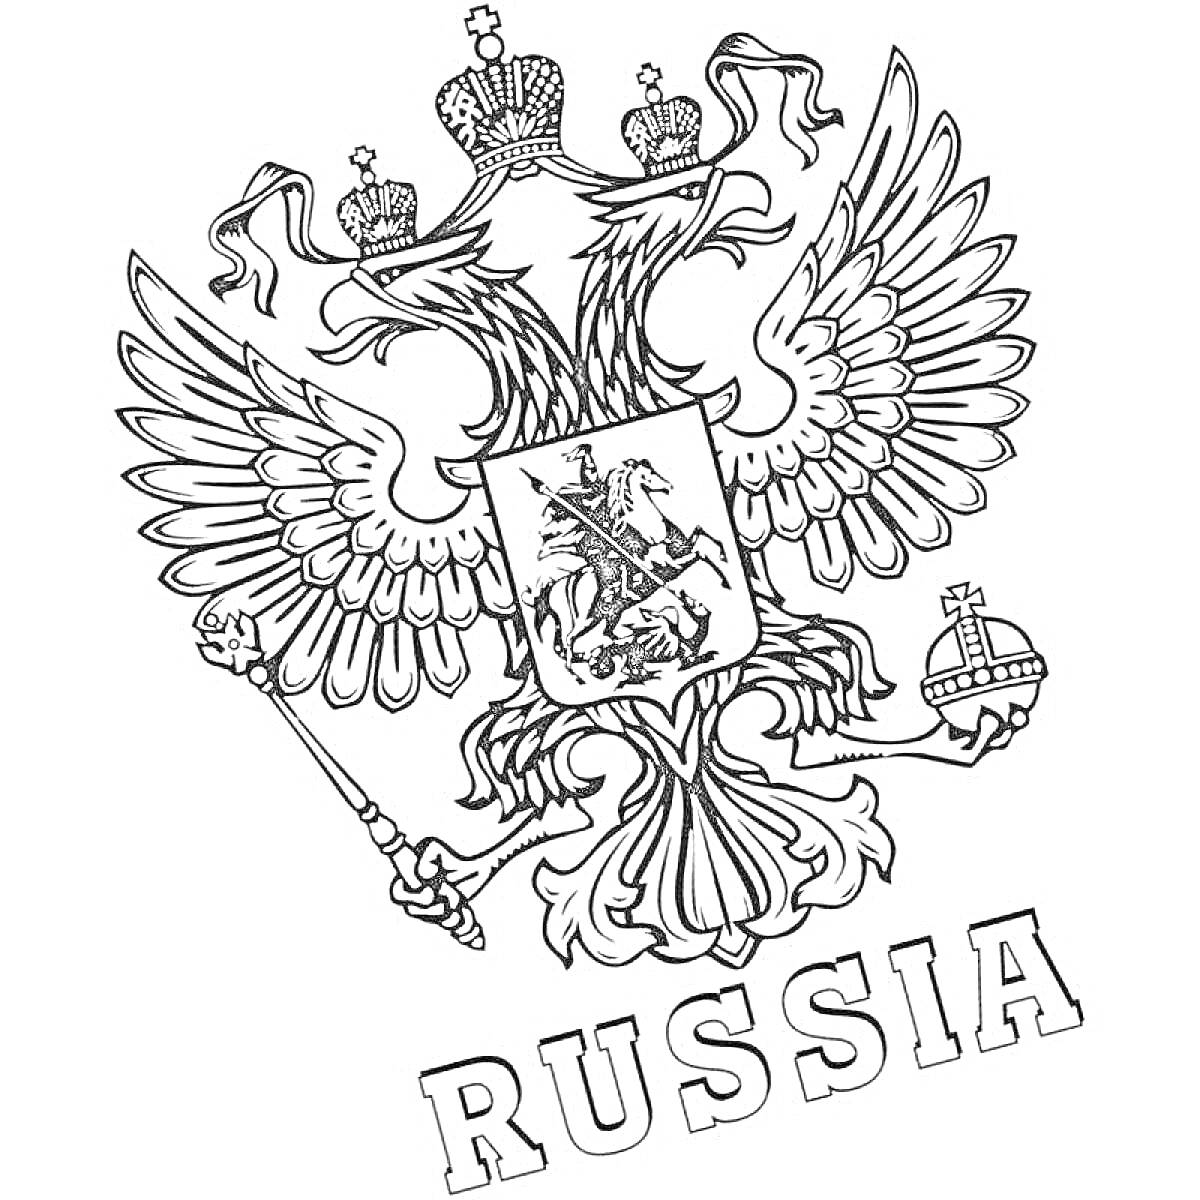 Раскраска Герб России с двуглавым орлом, тремя коронами, скипетром, державой и всадником, поражающим дракона